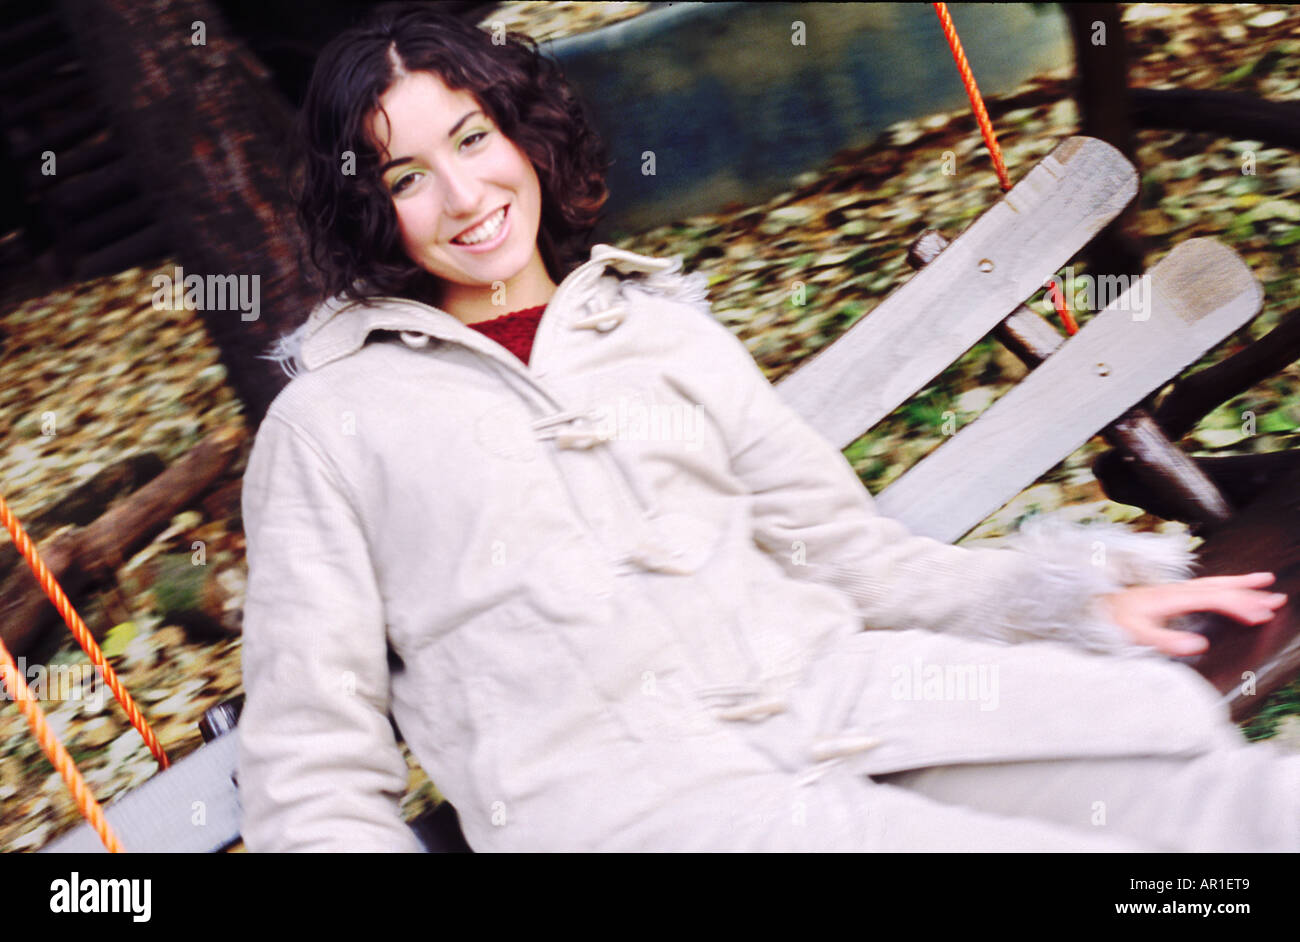 Outdoor-Tag Herbst Gartenschaukel Sway hautnah Frau junges Mädchen 20 25 Brünette locken Haare sitzen Rest entspannen Lächeln Lächeln Mantel whi Stockfoto